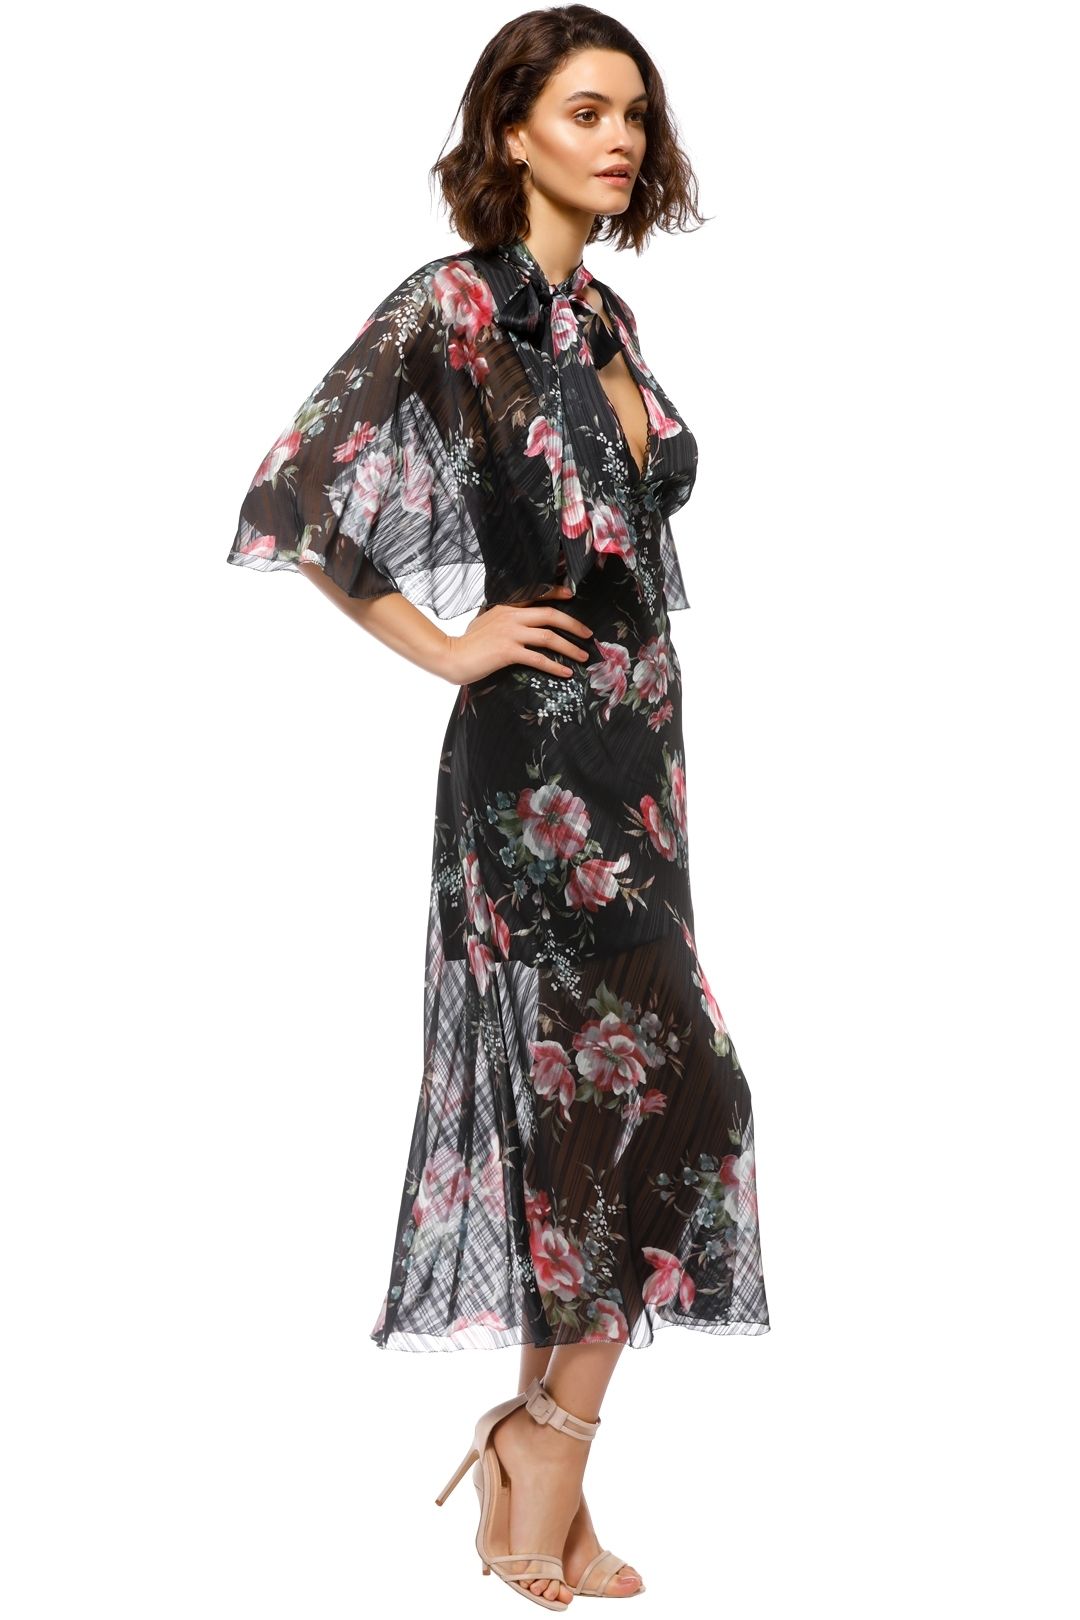 Talulah - Belonging Midi Dress - Black Floral - Side